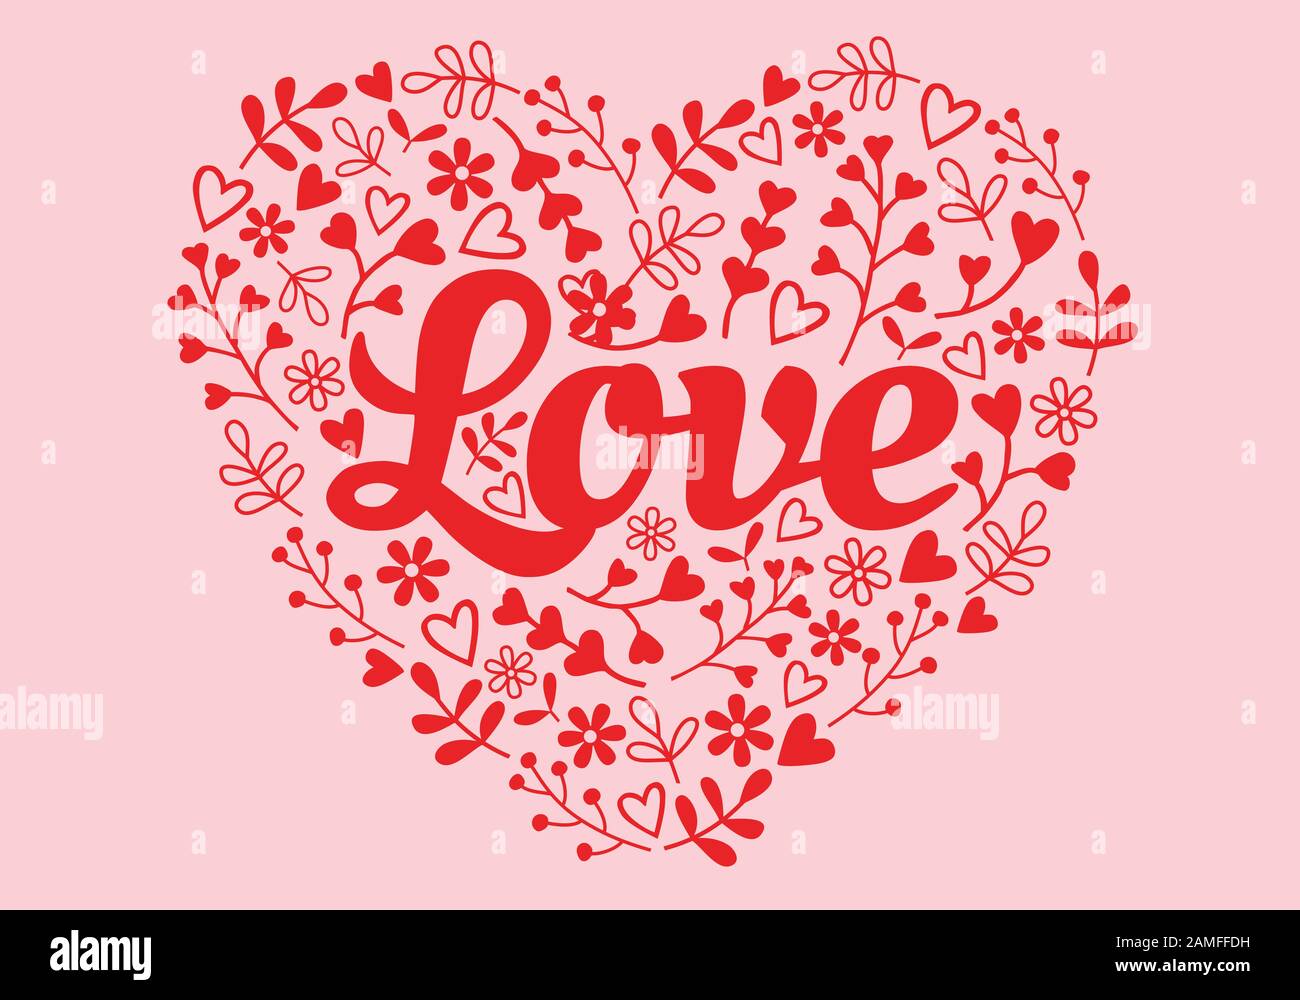 Herz mit Liebe und handgezeichneten Blumenelementen, Vektorgrafiken für Valentinskarten, Aufkleber Stock Vektor